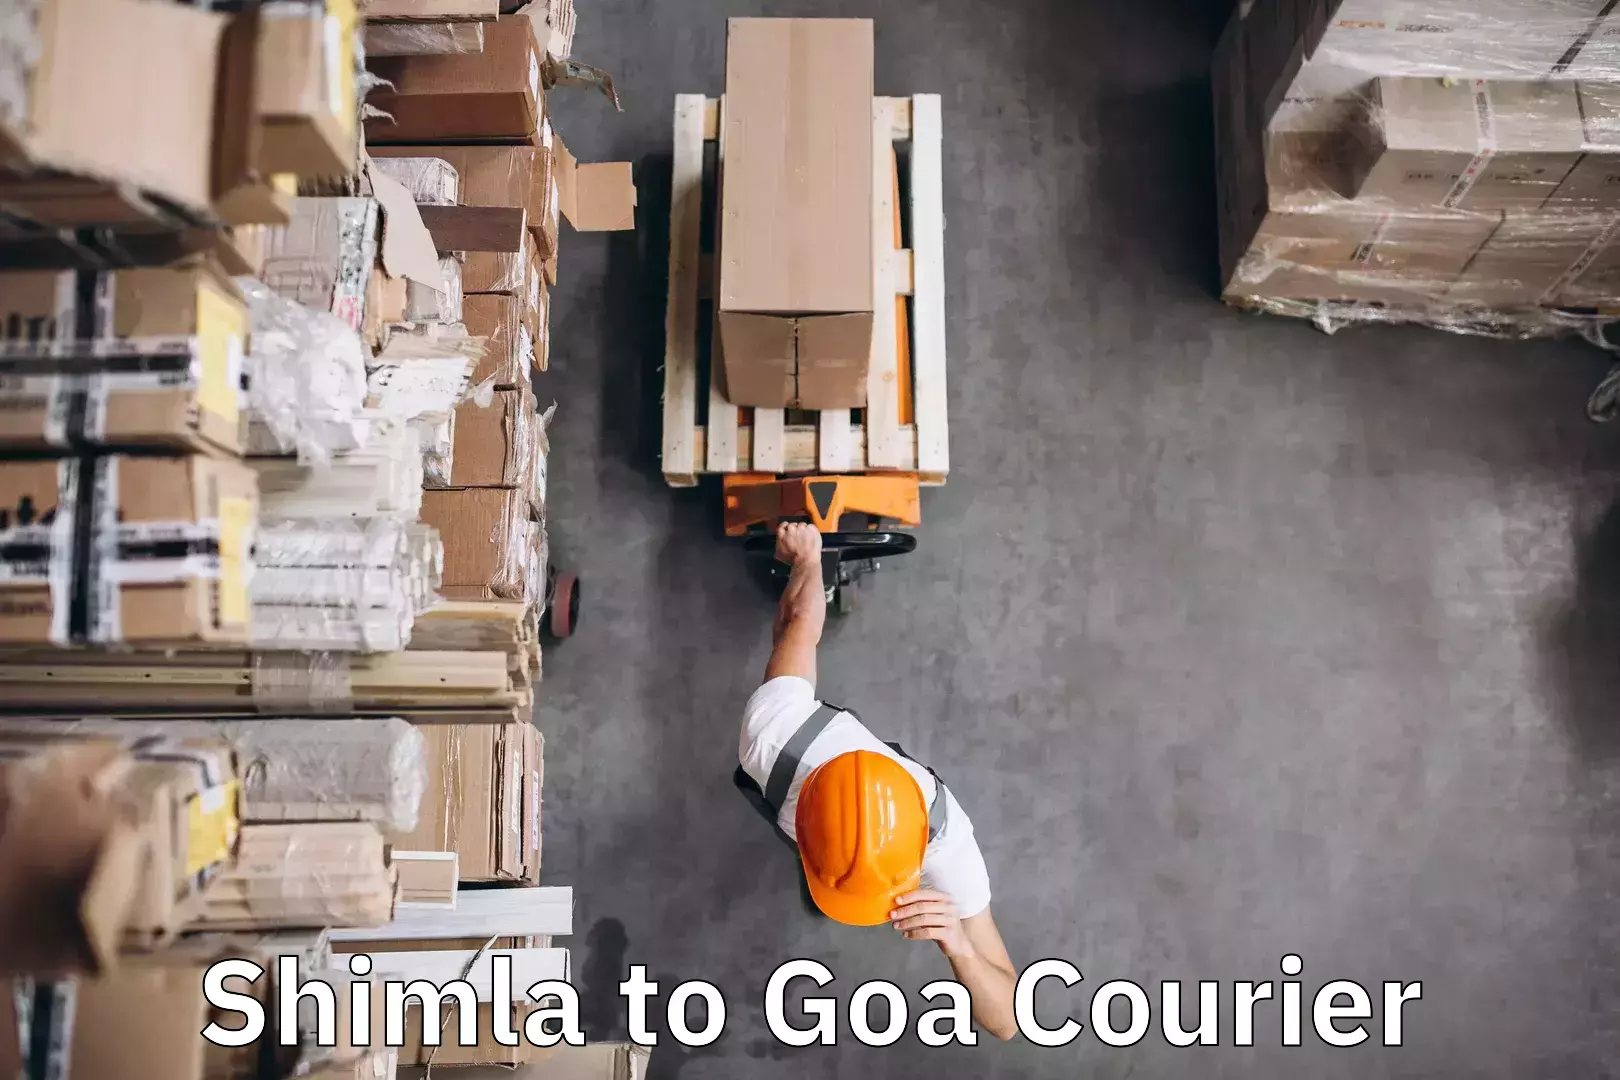 Luggage delivery network Shimla to Goa